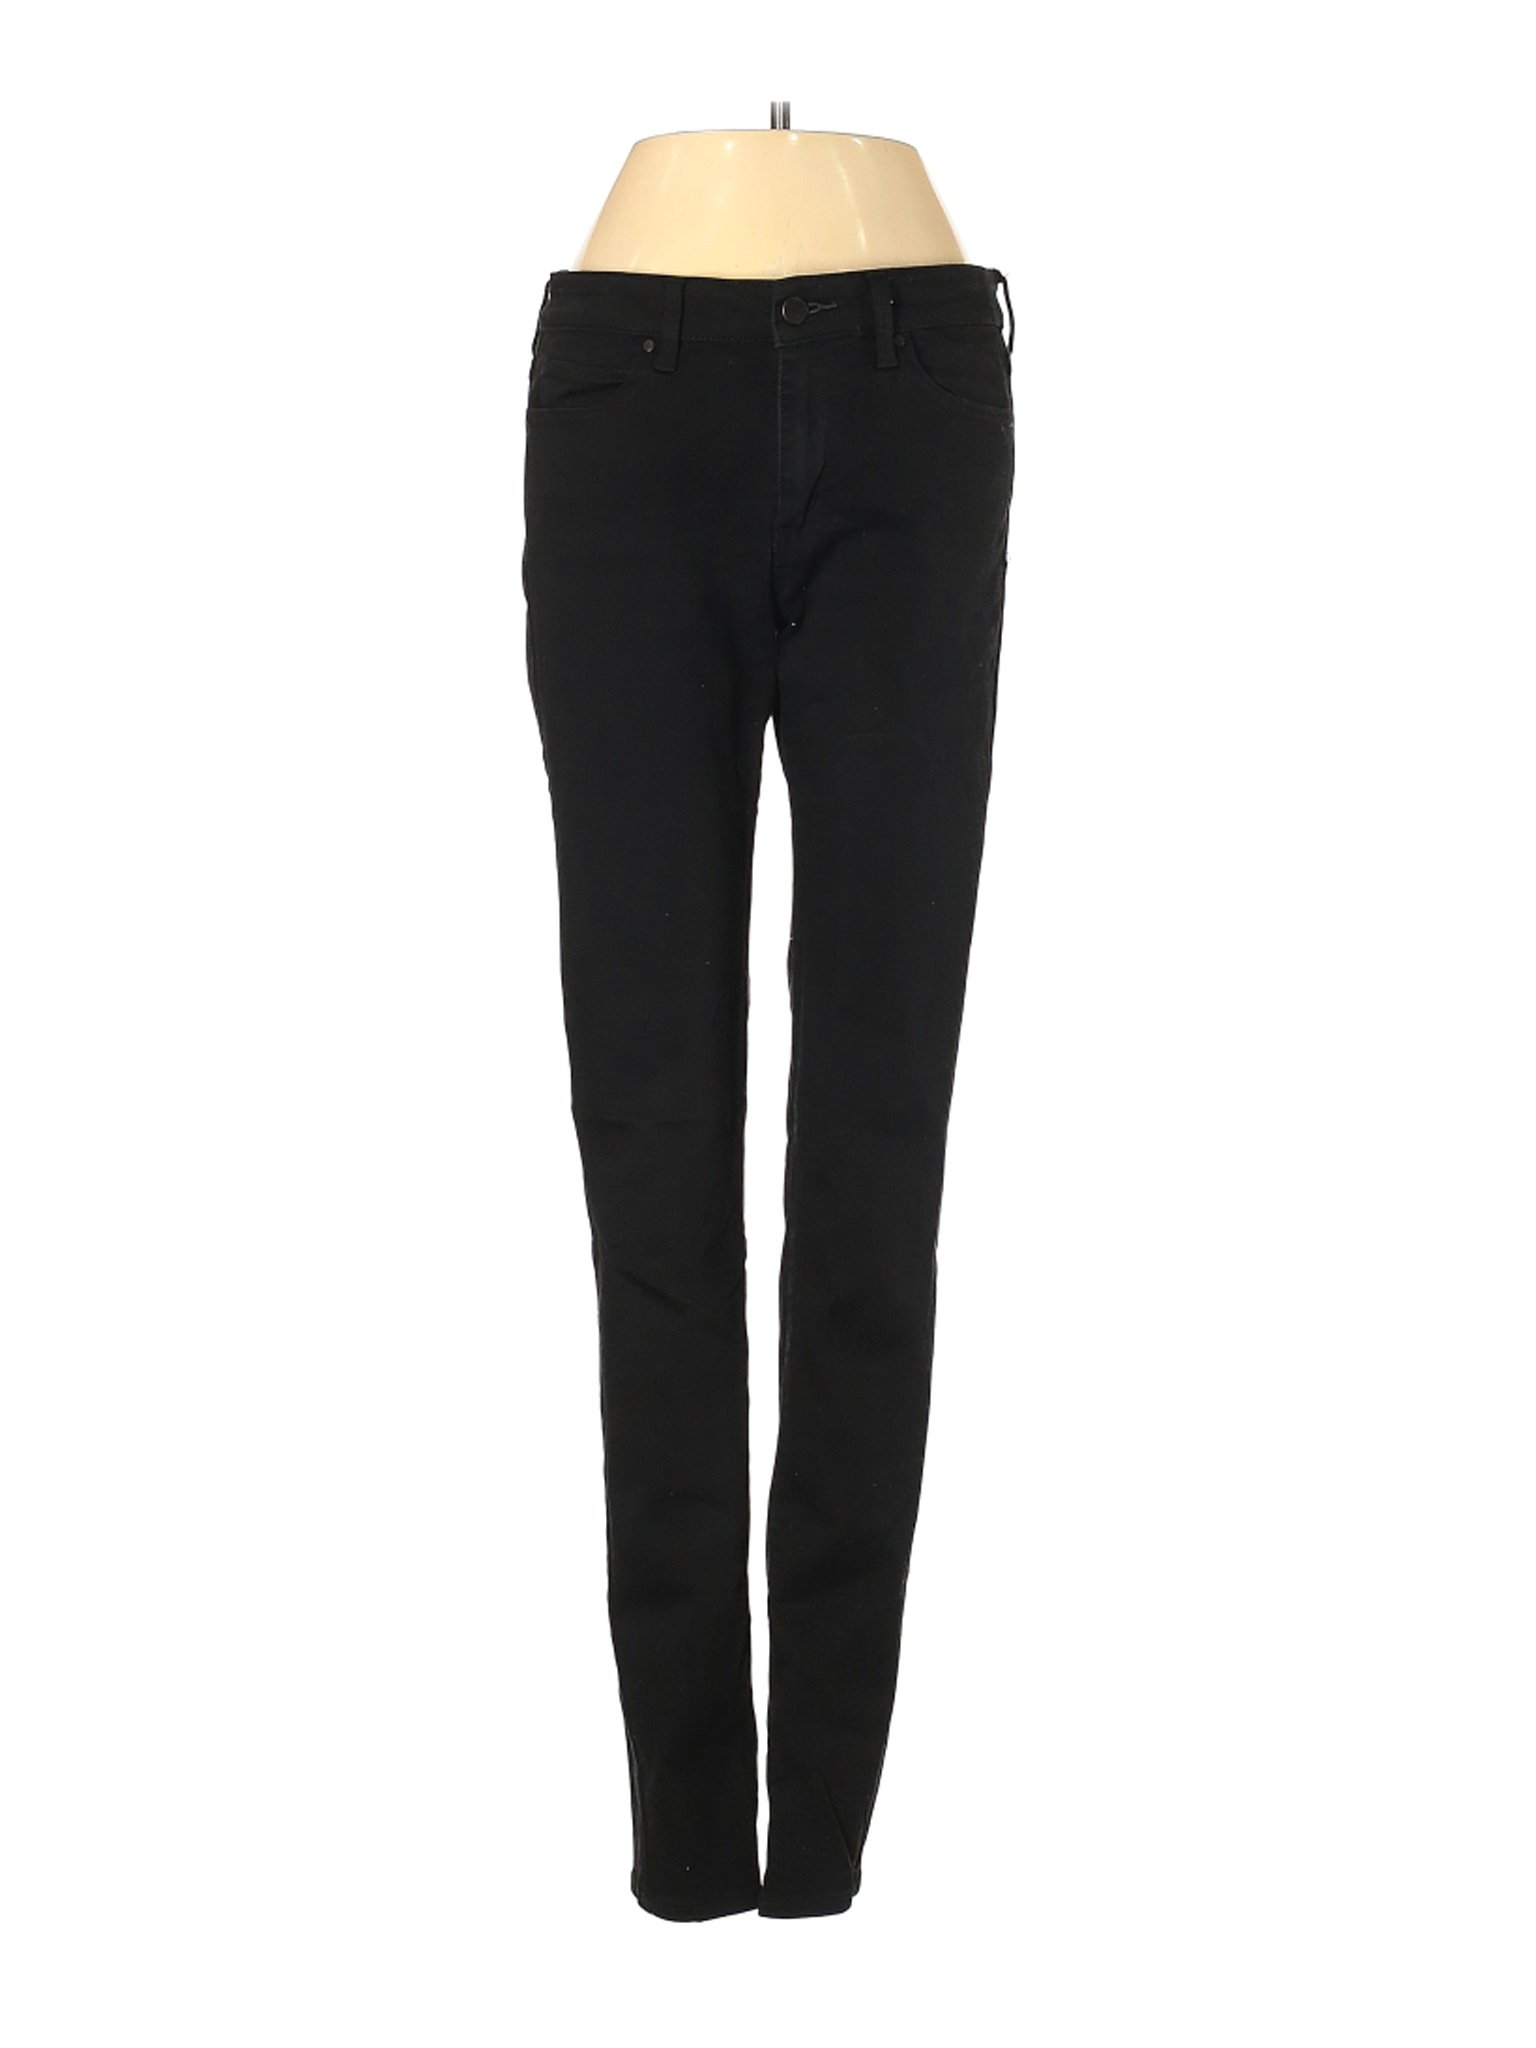 Uniqlo Women Black Jeans 27W | eBay